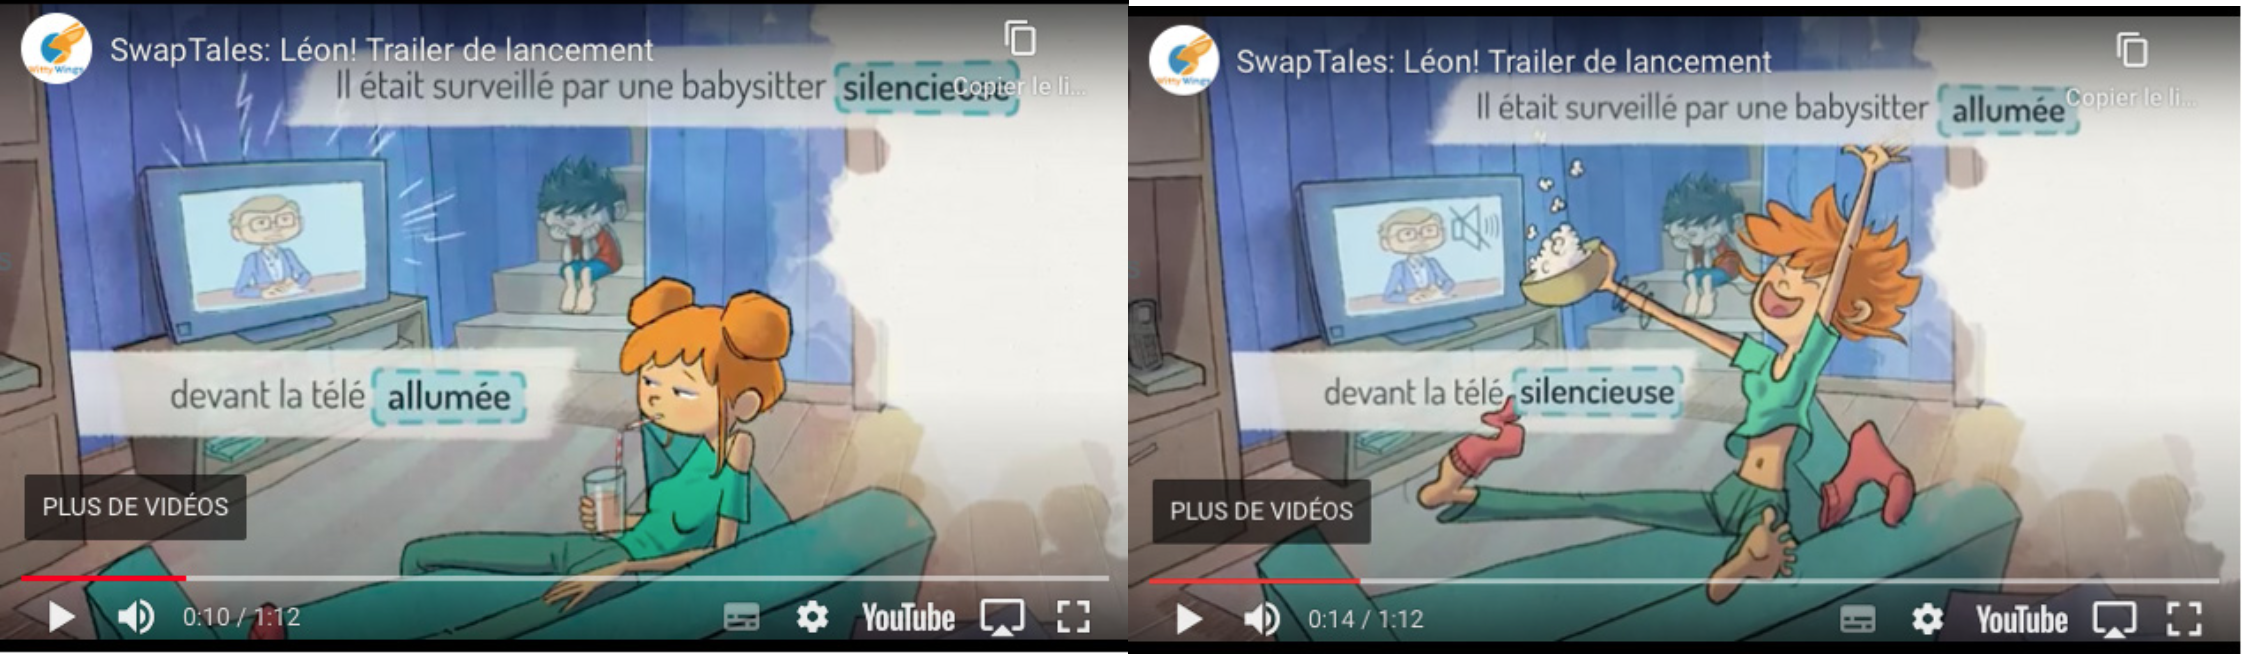 Captures d’écran d’une captation vidéo de l’application SwapTales : Léon !